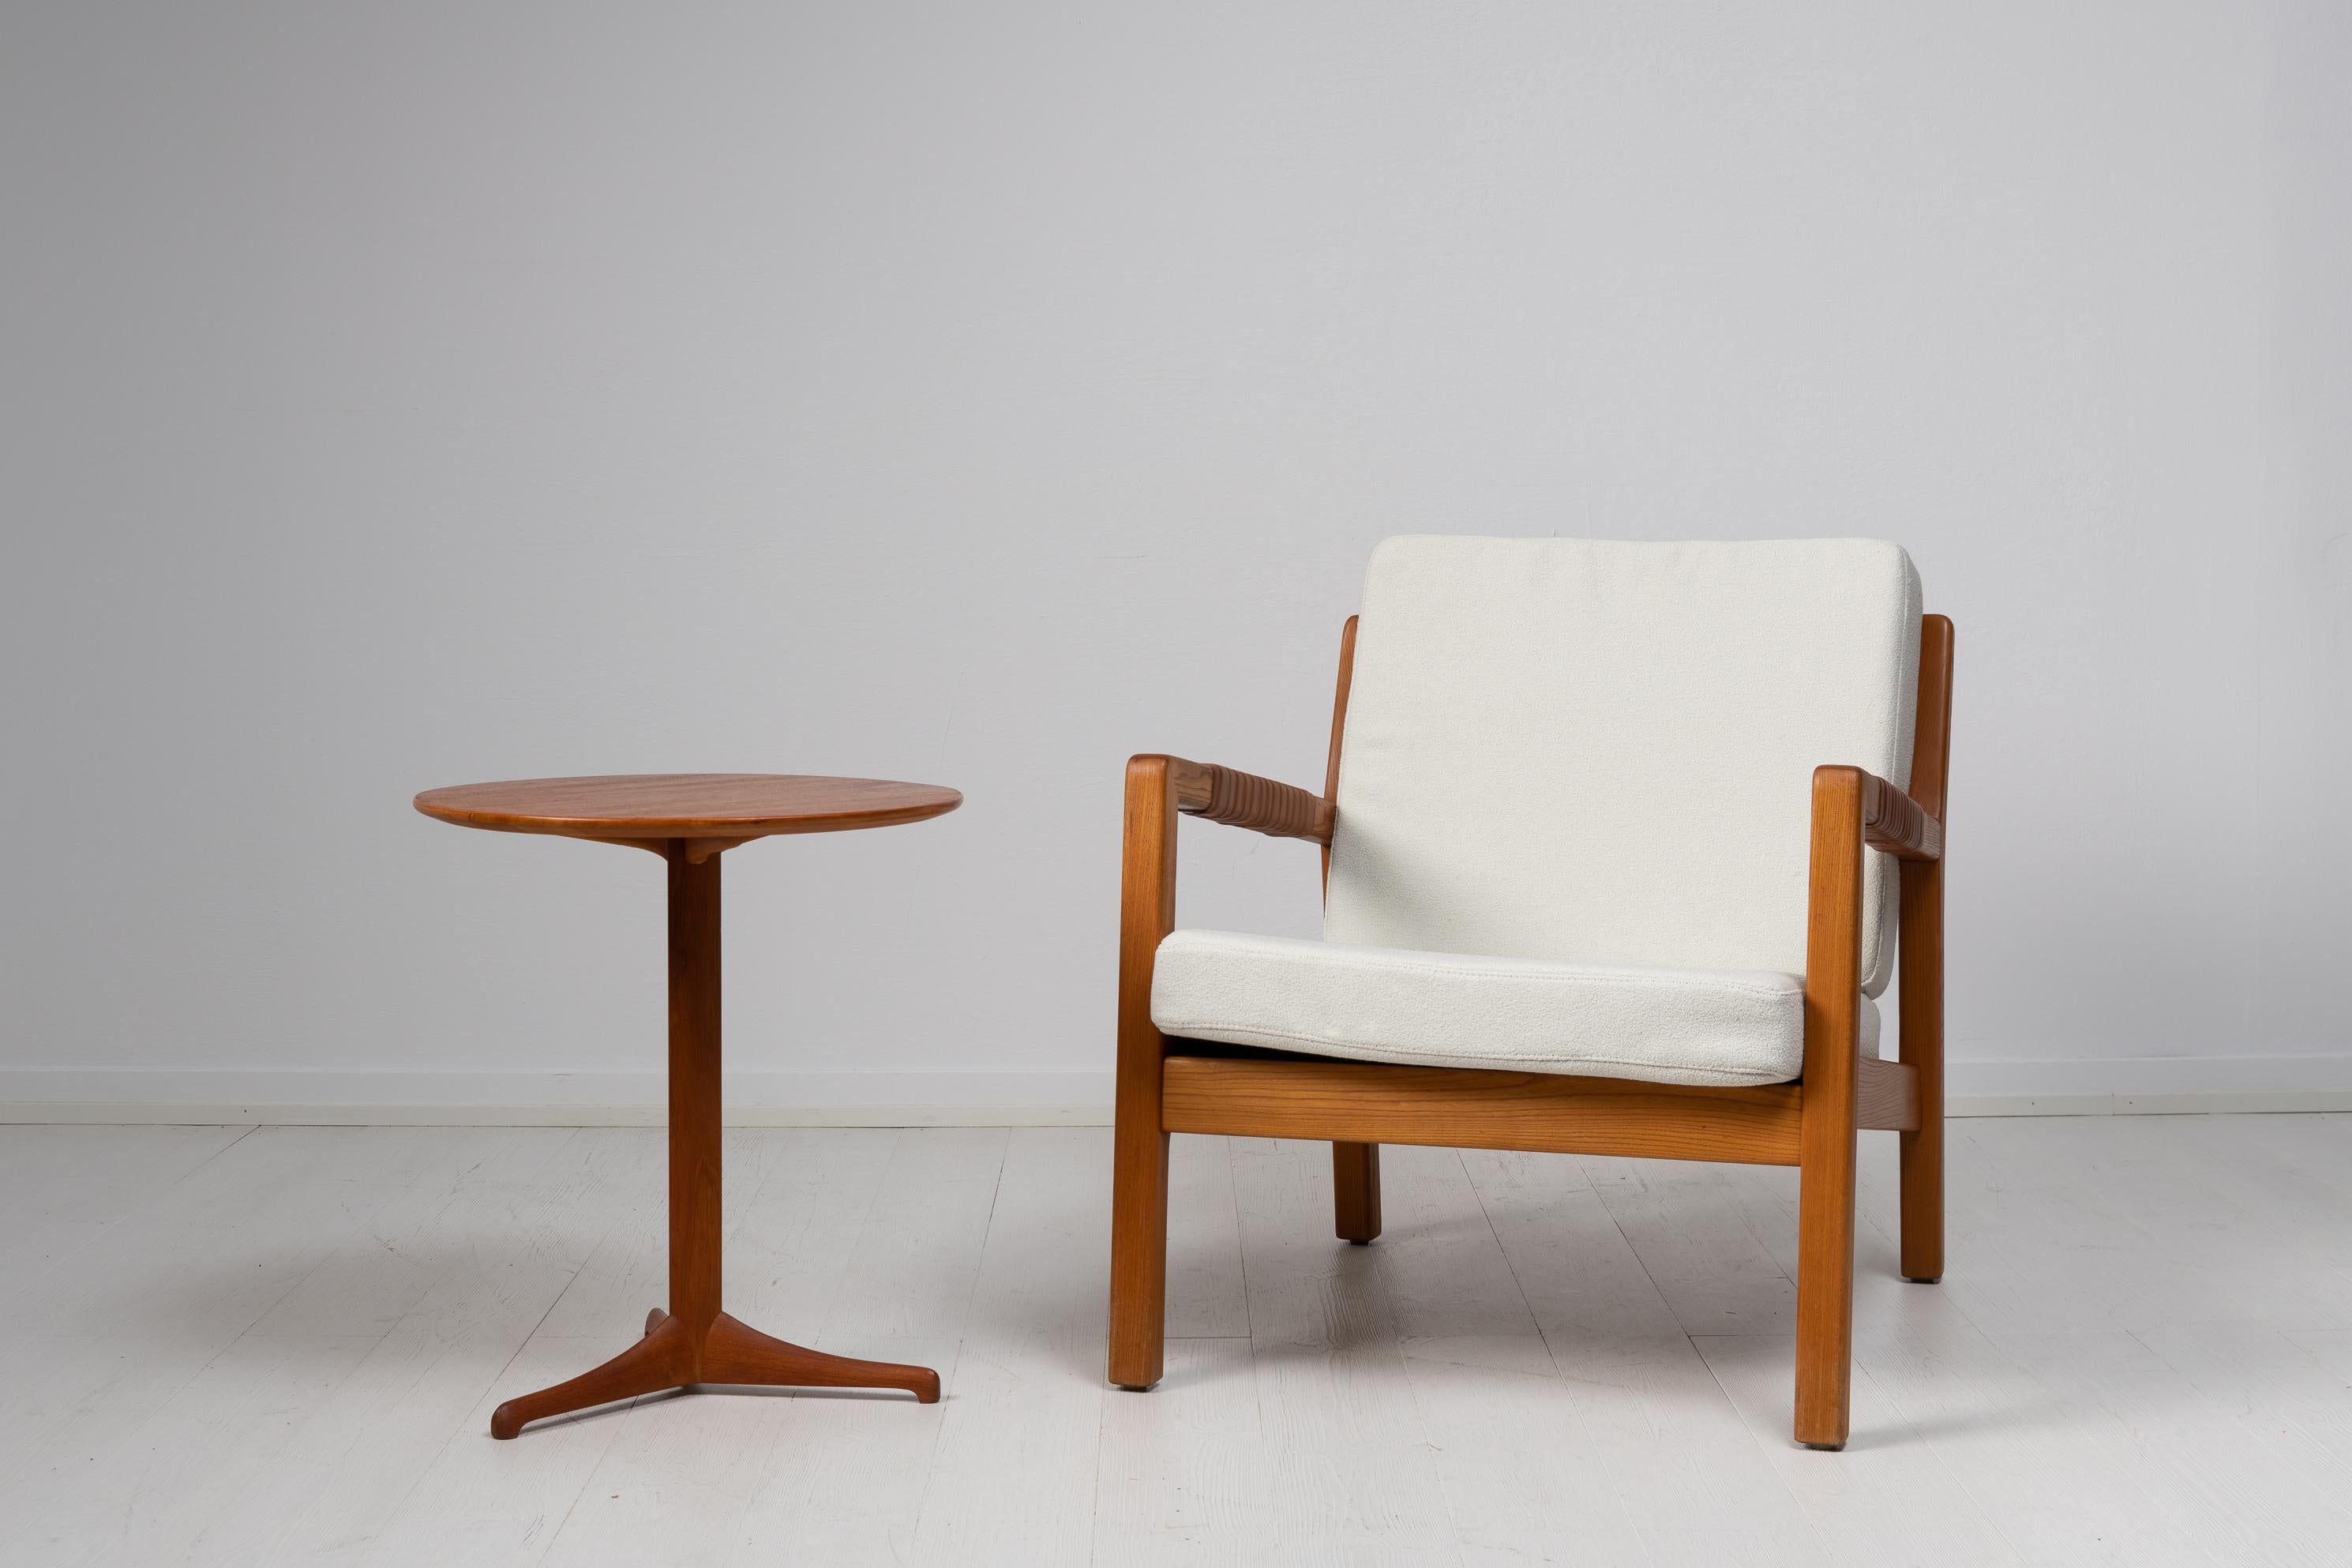 Fauteuil Trienna de Carl-Gustaf Hjort af AFS. Le modèle s'appelle Trienna et a été fabriqué par Hiort Calle, Puunveisto Oy Träsnideri AB au milieu du 20e siècle. La chaise a un cadre en chêne avec des bandes de cuir tressé dans le dossier et autour